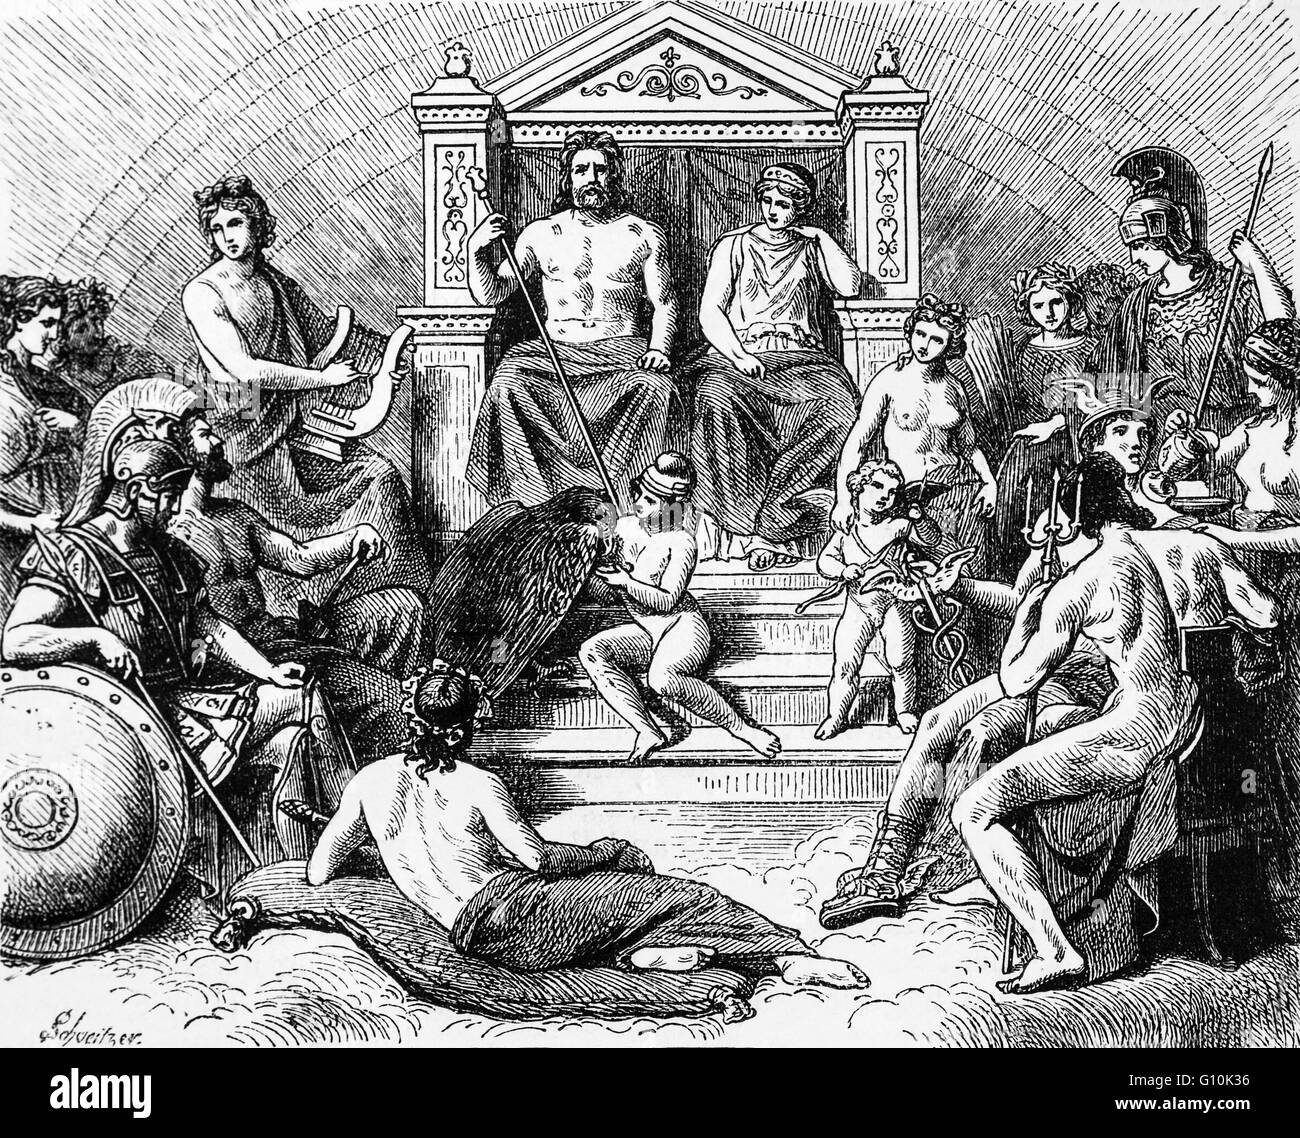 Griechische Mythologie, die Götterversammlung auf dem Olymp in Griechenland  Stockfotografie - Alamy